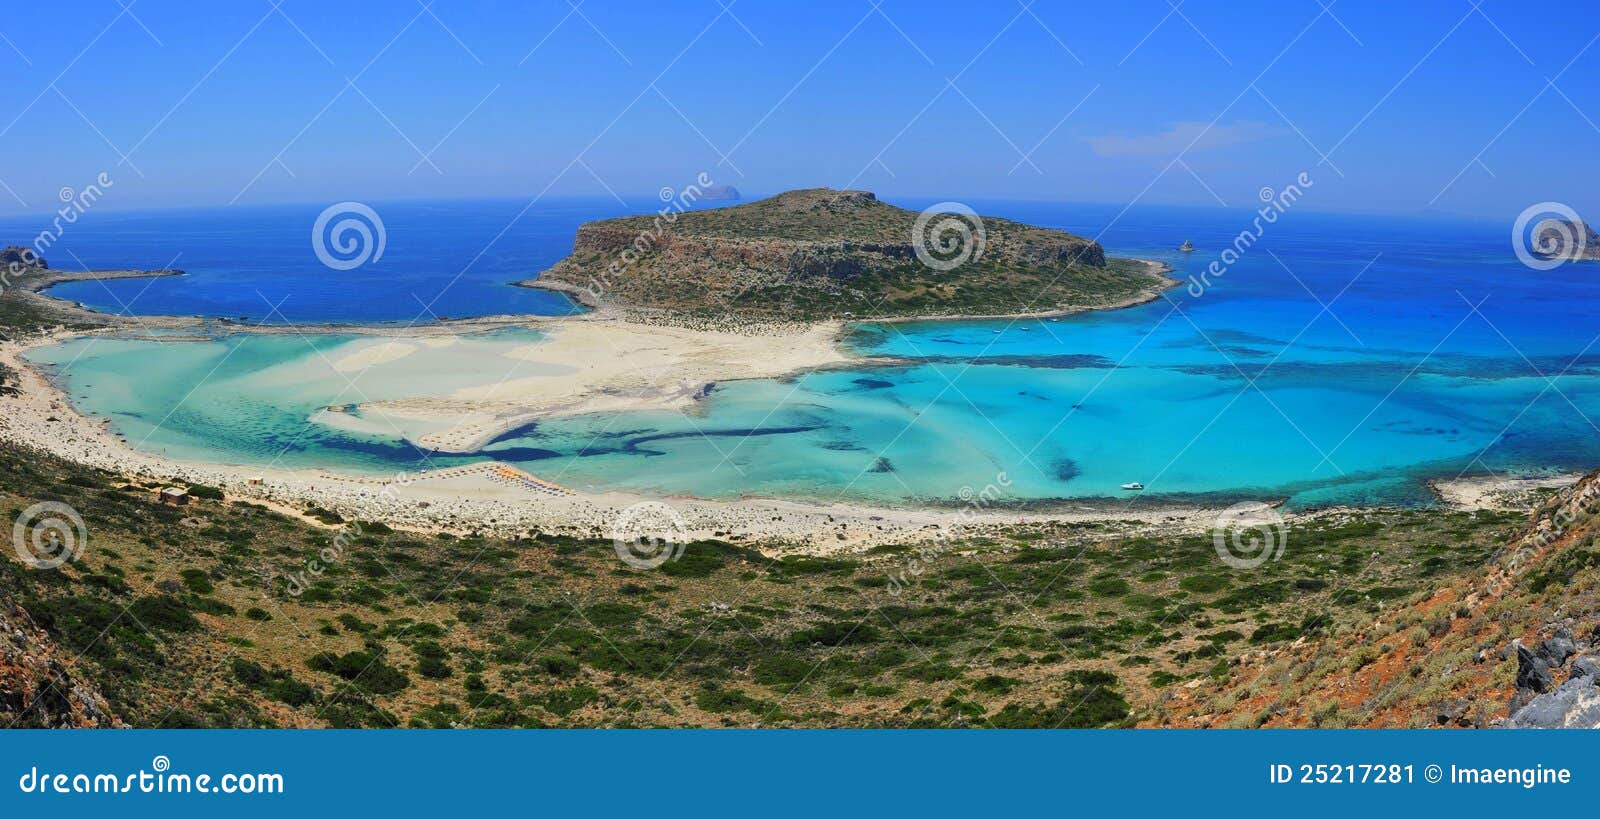 balos bay / beach, gramvousa - crete, greece